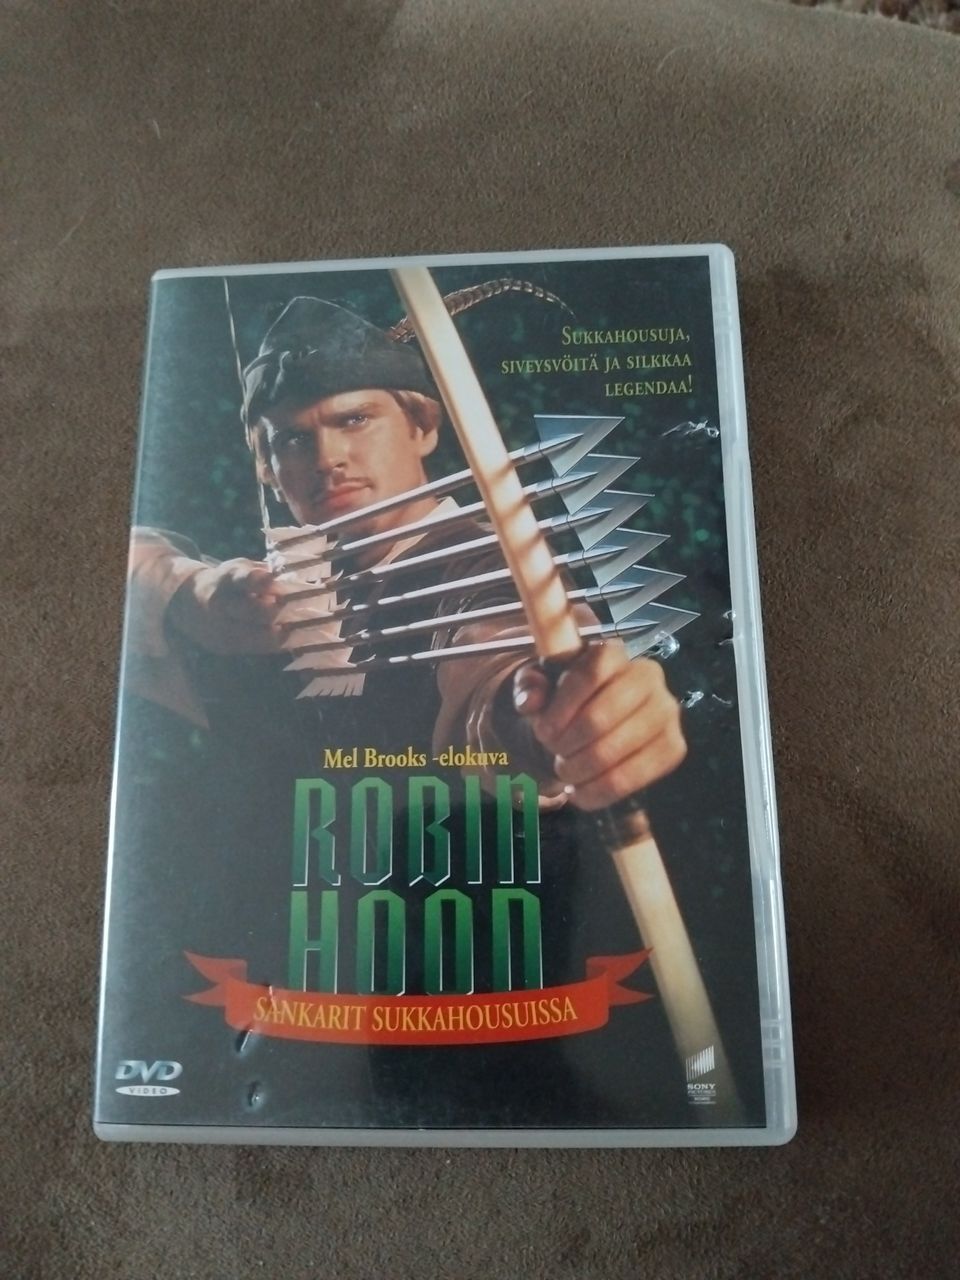 Robin Hood sankarit sukkahousuissa